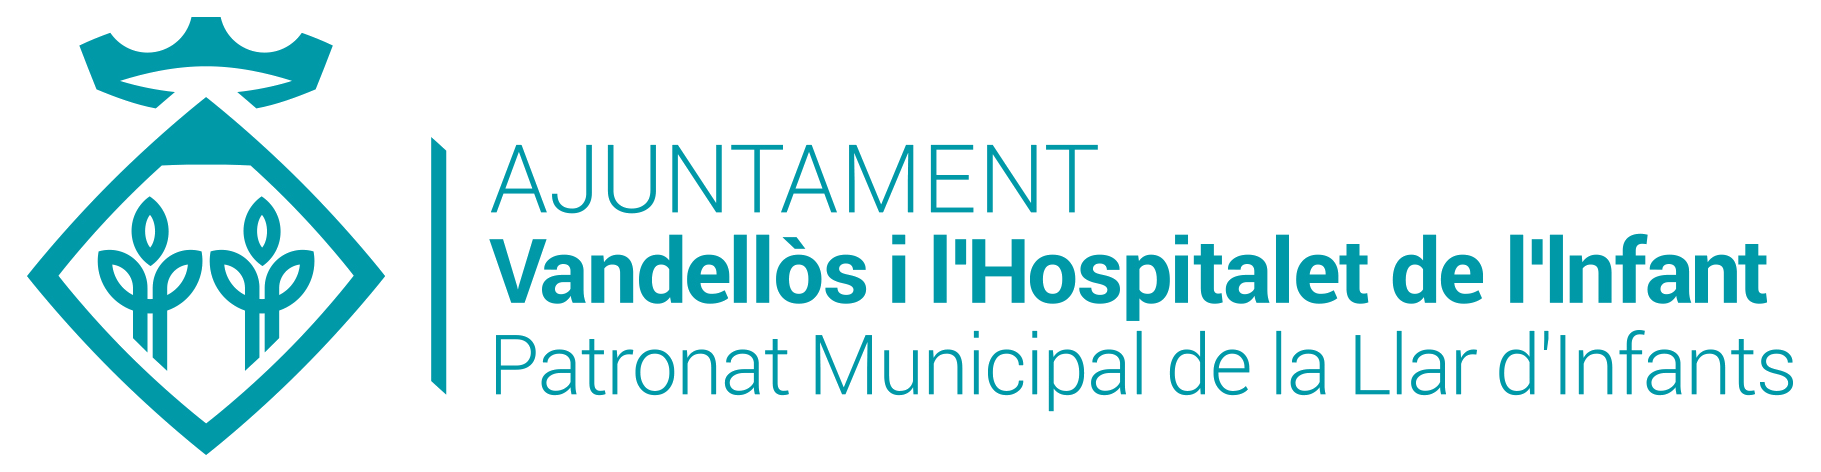 Logo de la marca de l'ajuntament de vandellòs i l'hospitalet de l'infant